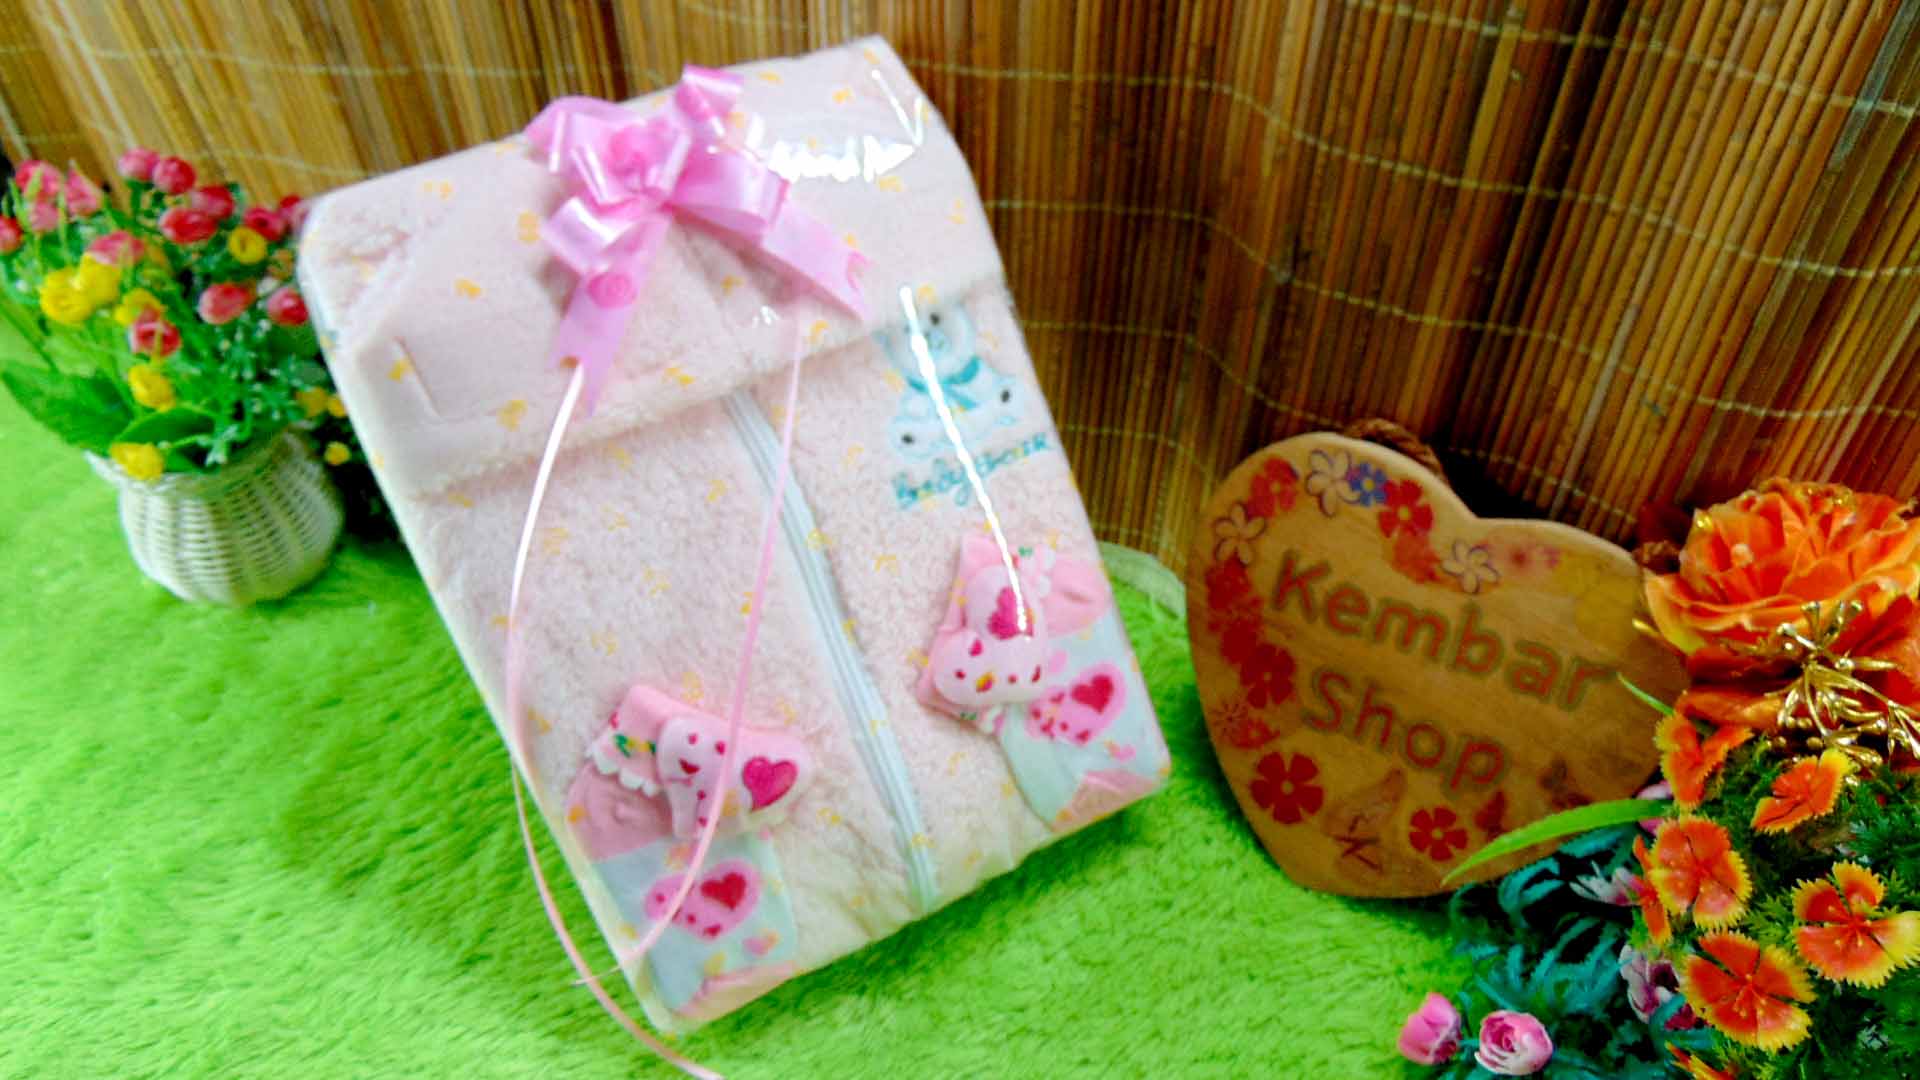 5 FREE KARTU UCAPAN paket kado lahiran bayi baby gift set box jaket plus sock ANEKA motif